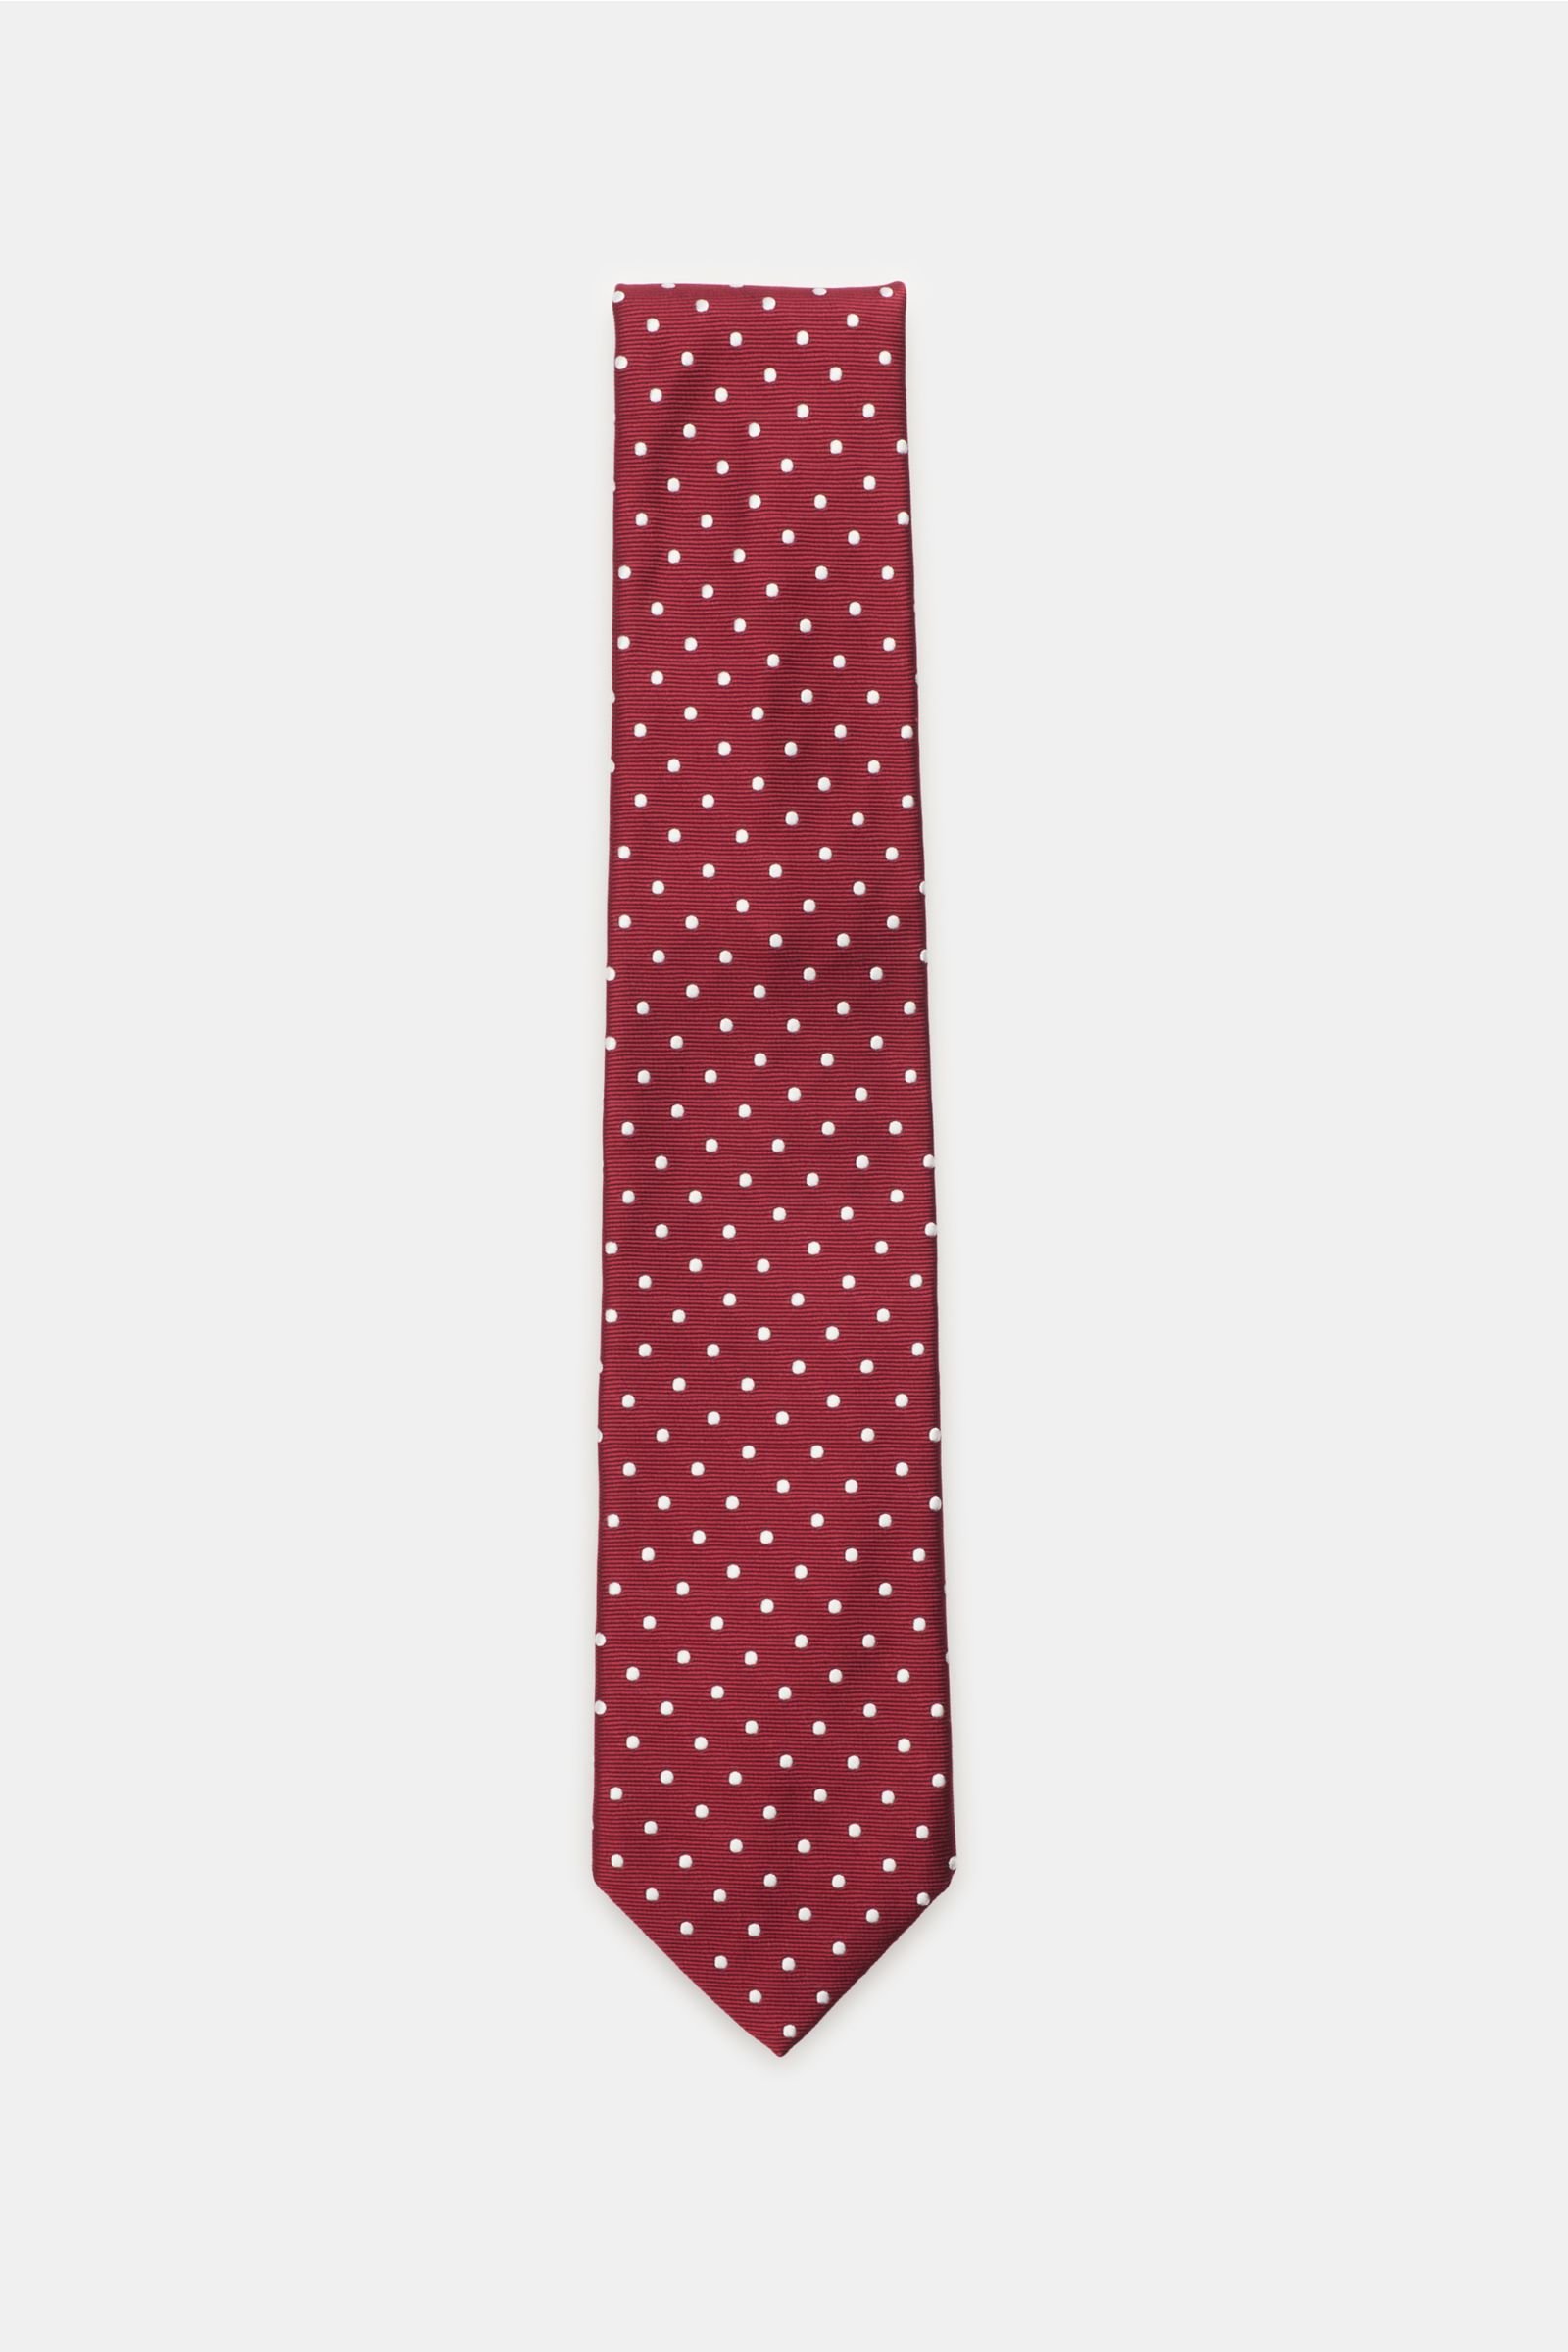 Silk tie dark red with polka dots